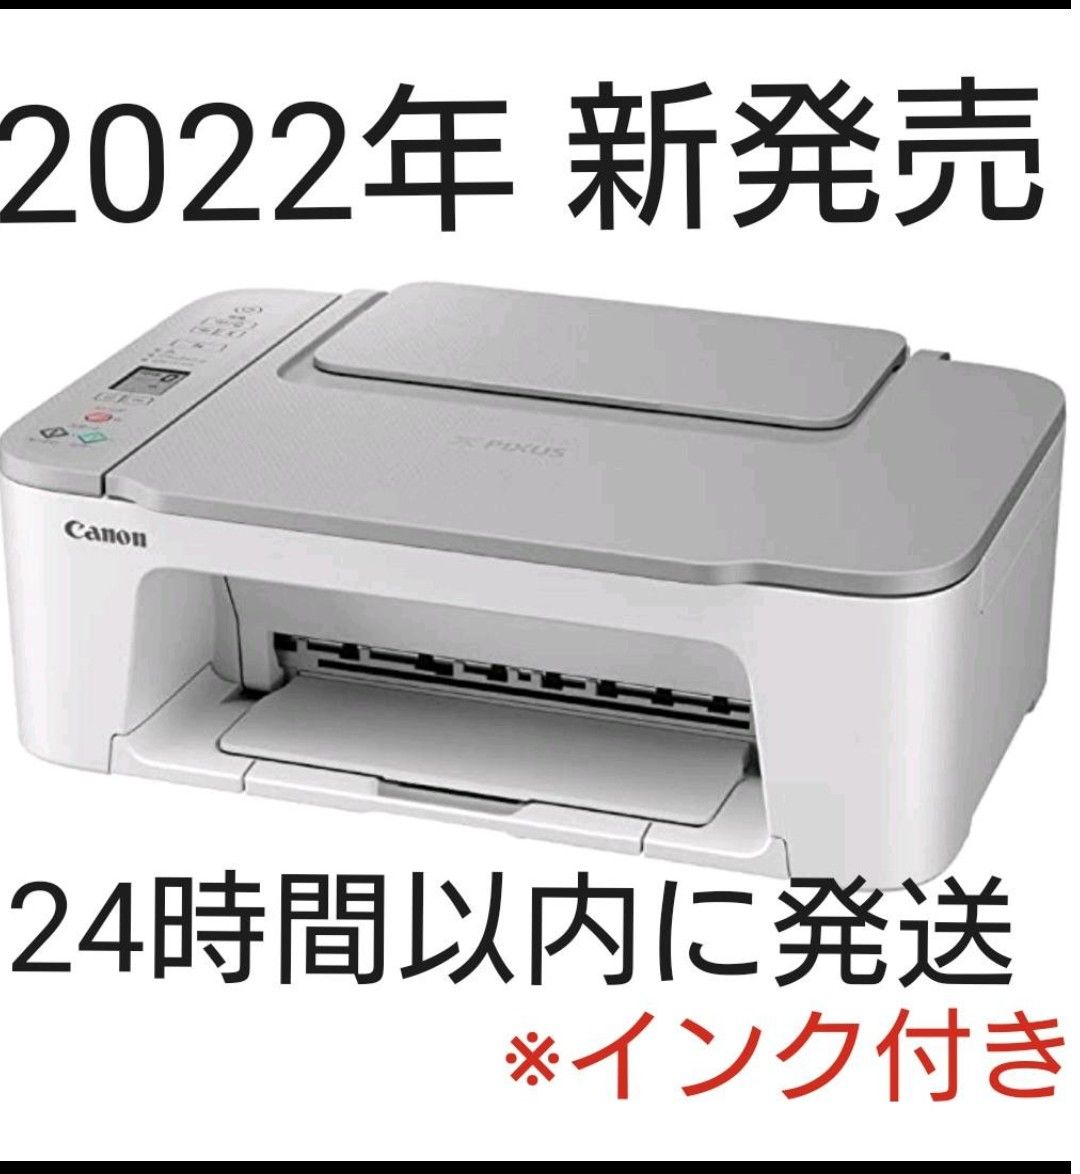 新品 CANON プリンター コピー機 印刷機 複合機 本体 純正インク 最新